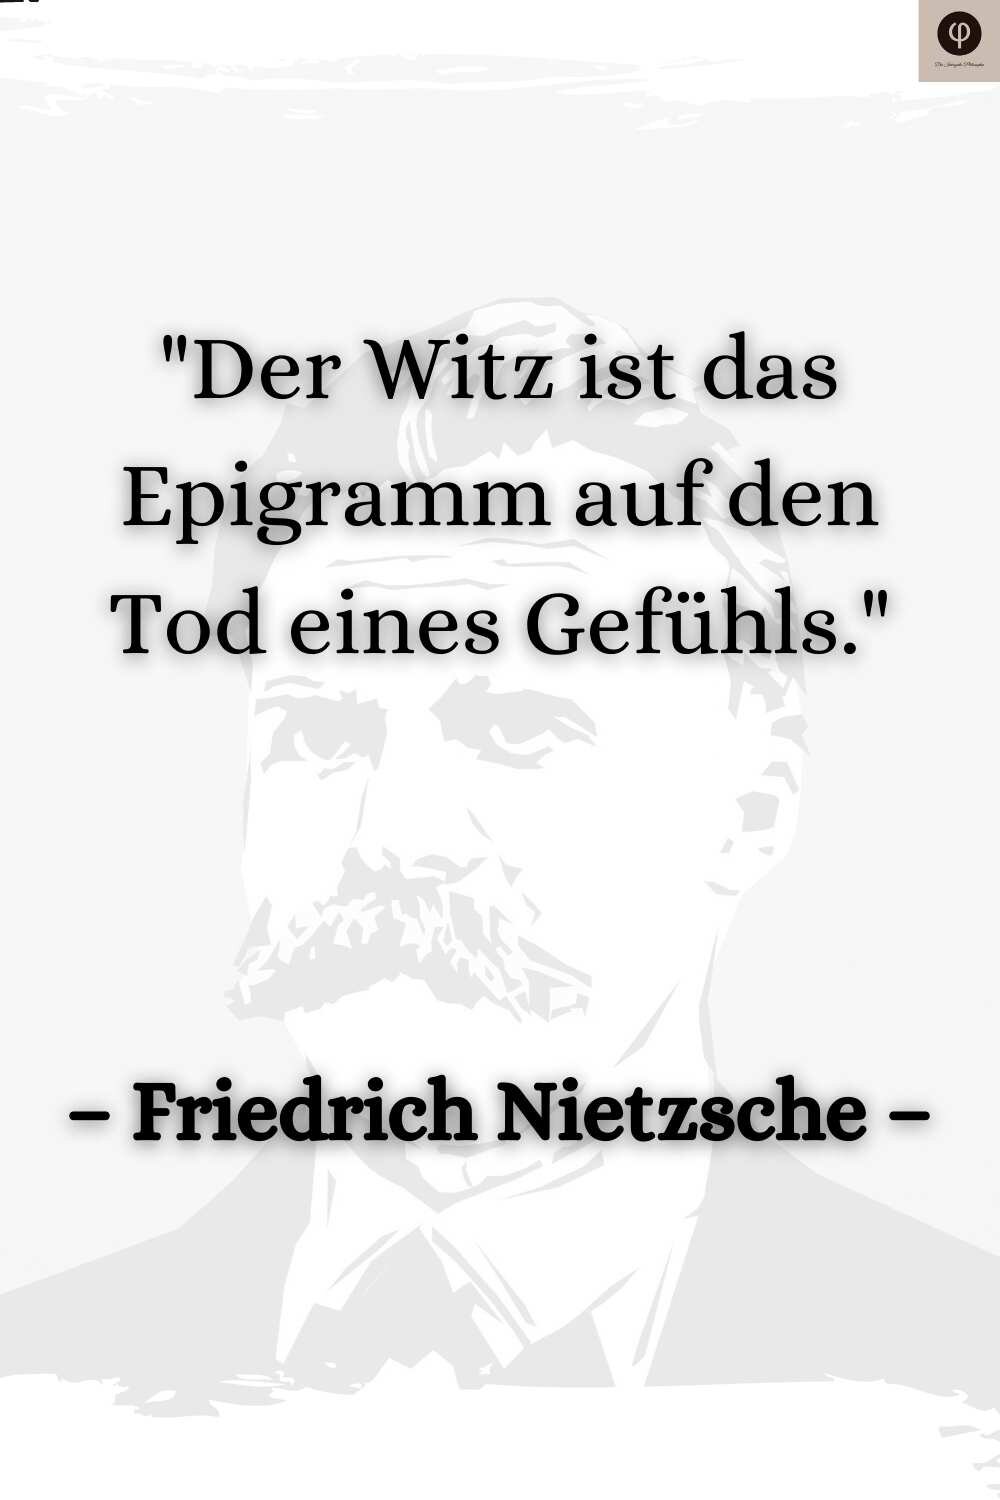 Nietzsche Zitate Spruche Uber Depression Mensch Welt